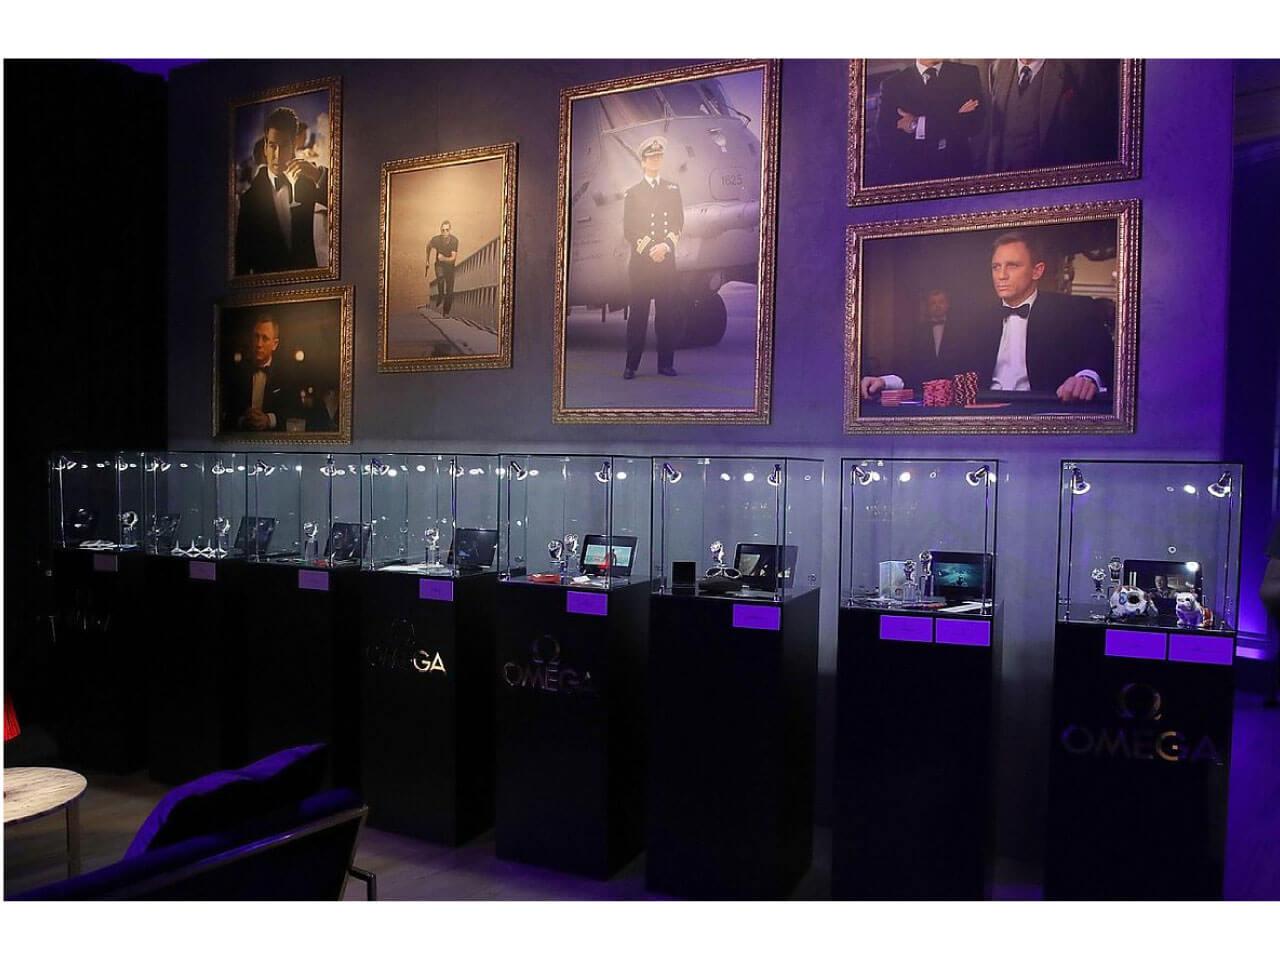 ロンドンの会場（テート・ブリテン）には歴代の『007』シリーズで使用された小道具や美術作品も展示されました